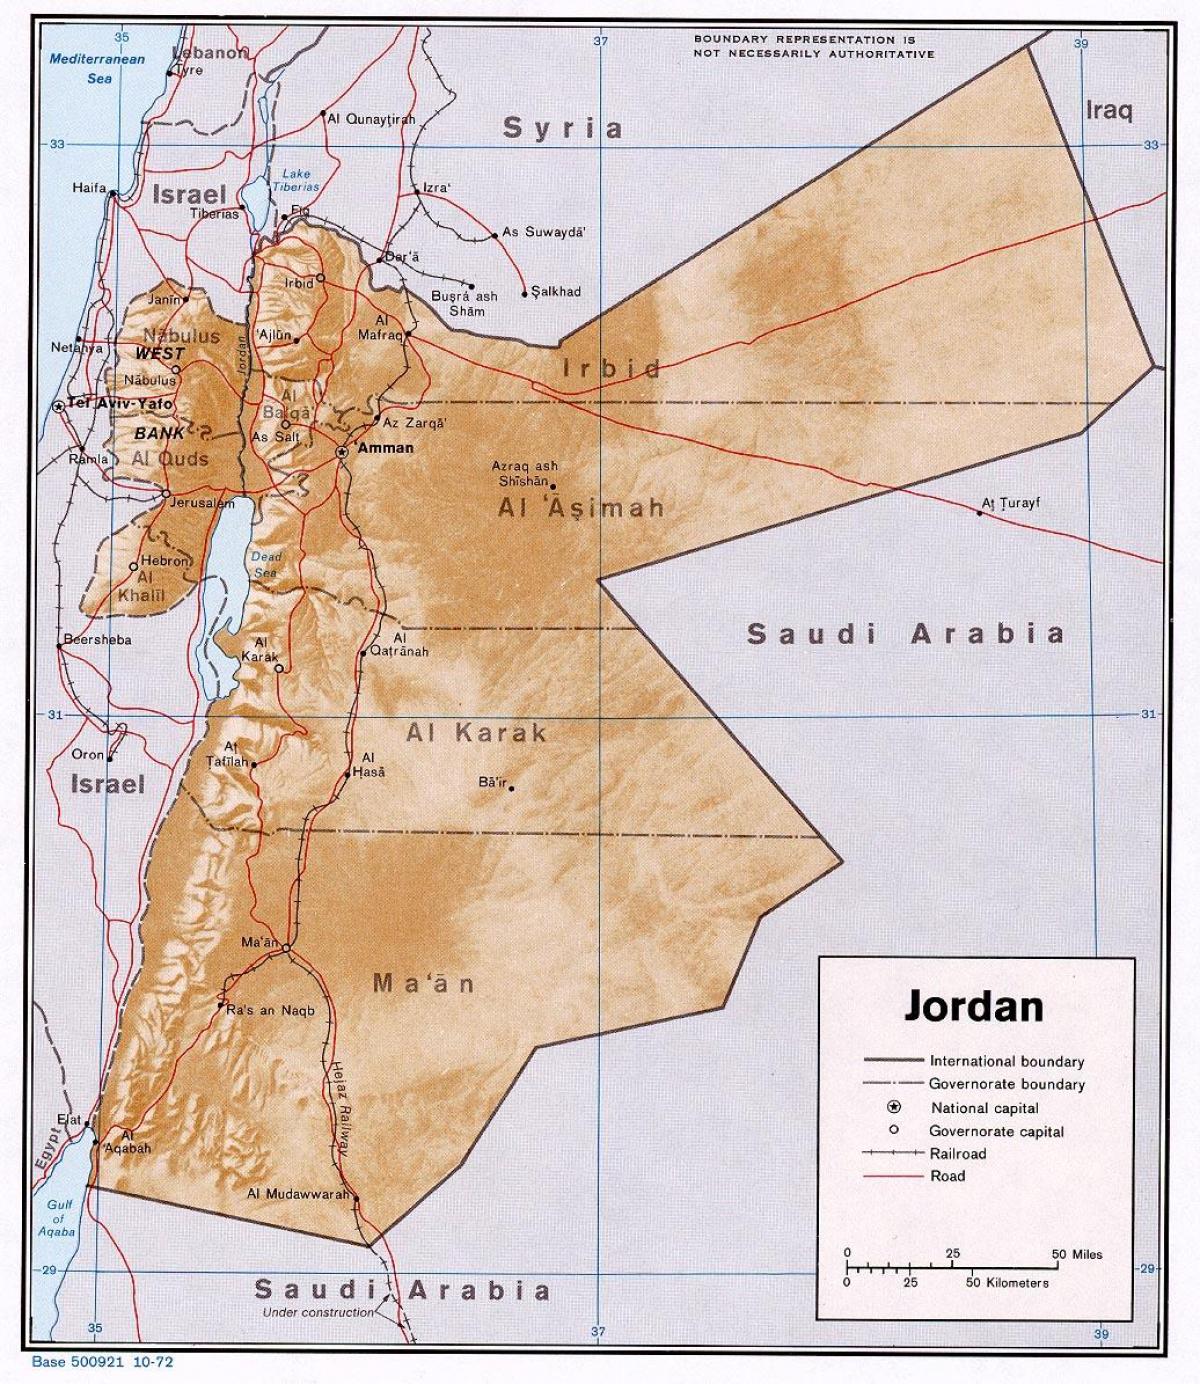 мапата покажувајќи Јордан